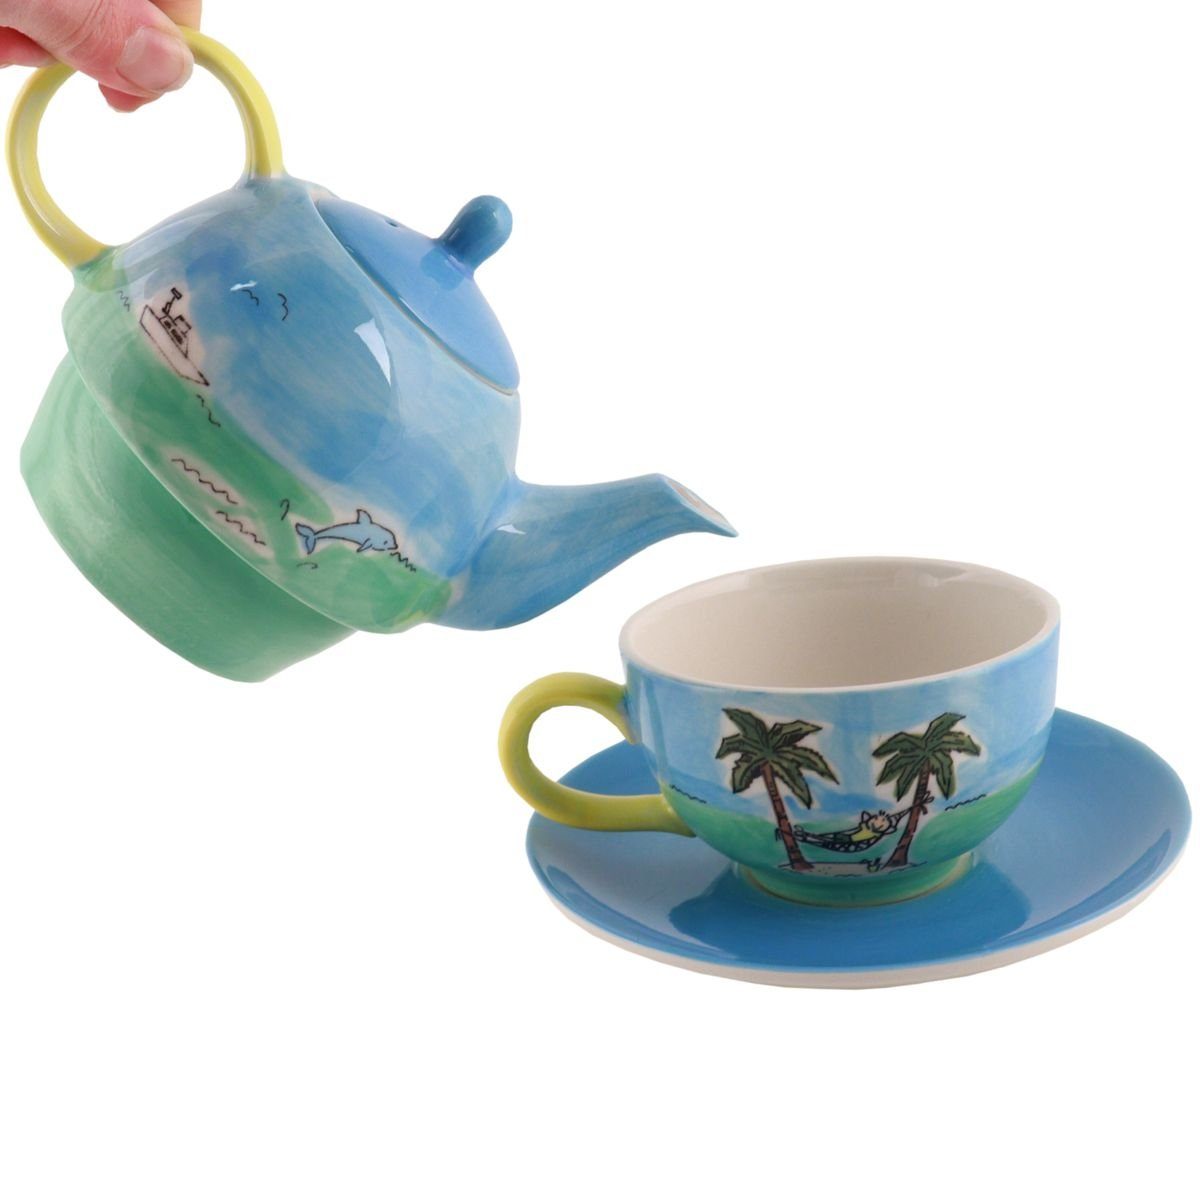 Keramik Tea for Insel, One Reif für Mila Tee-Set (Set) Teekanne Mila die